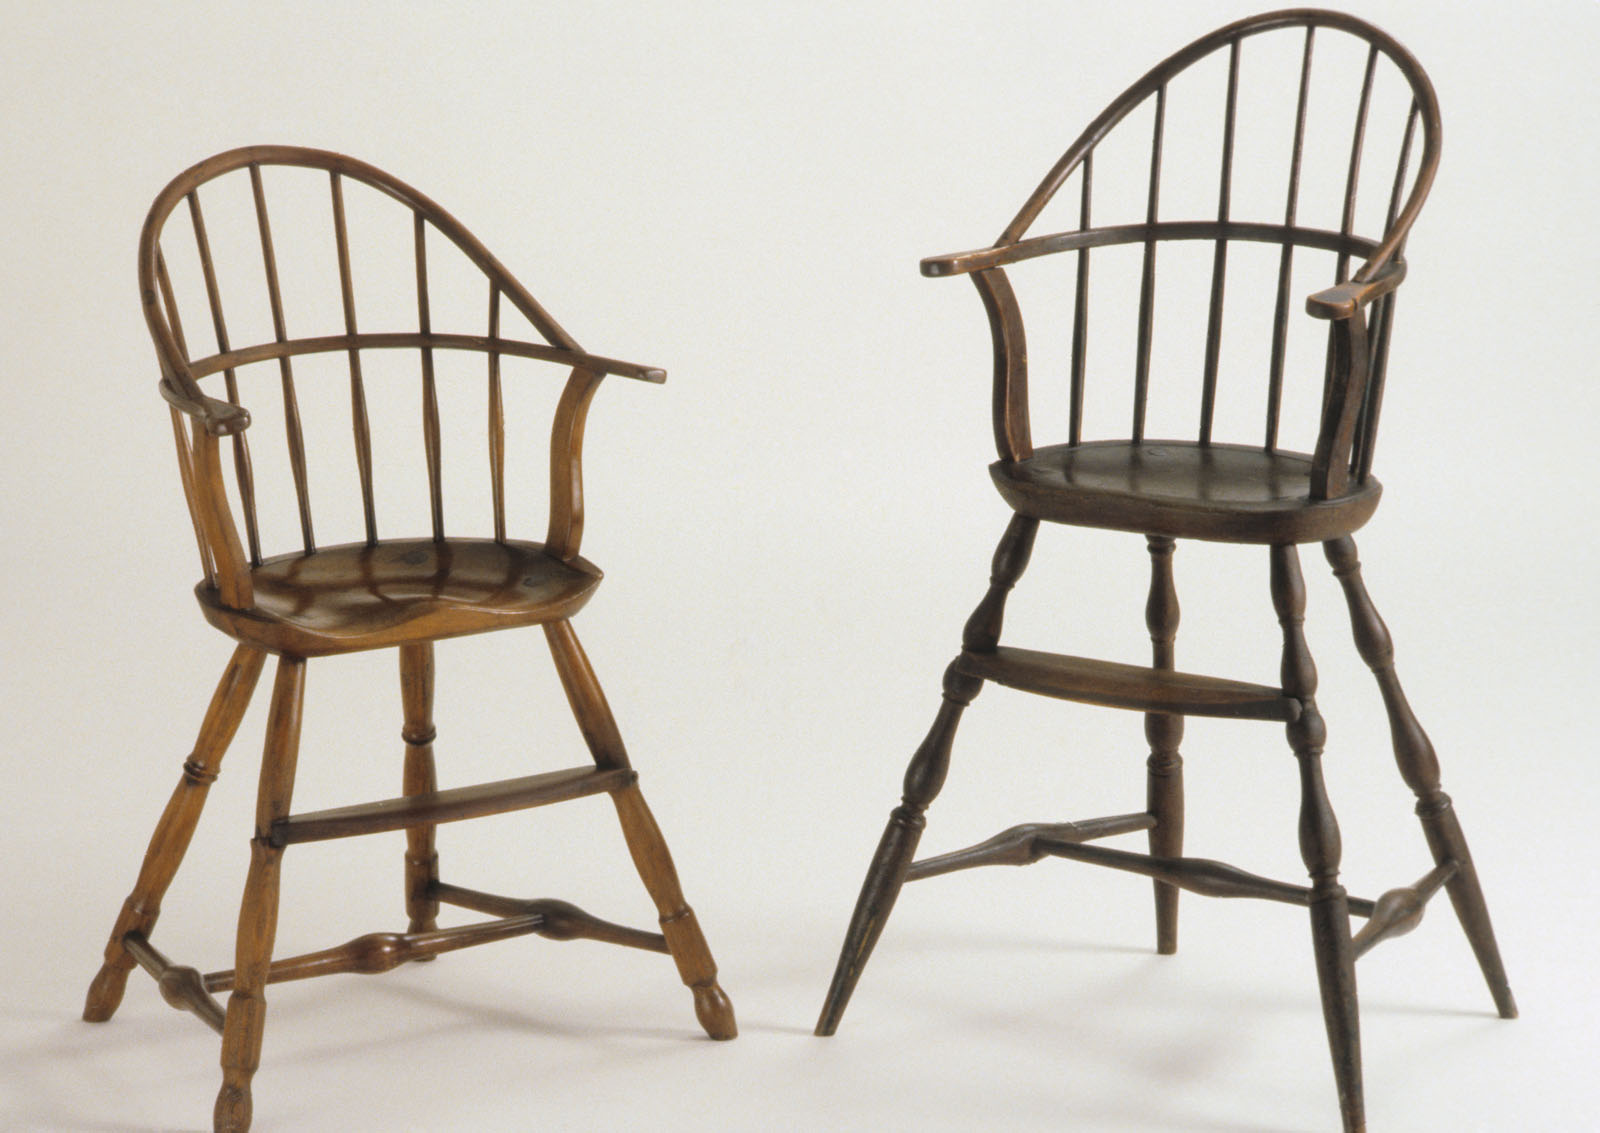 1951.0077.002 Chair, 1968.0534 Chair